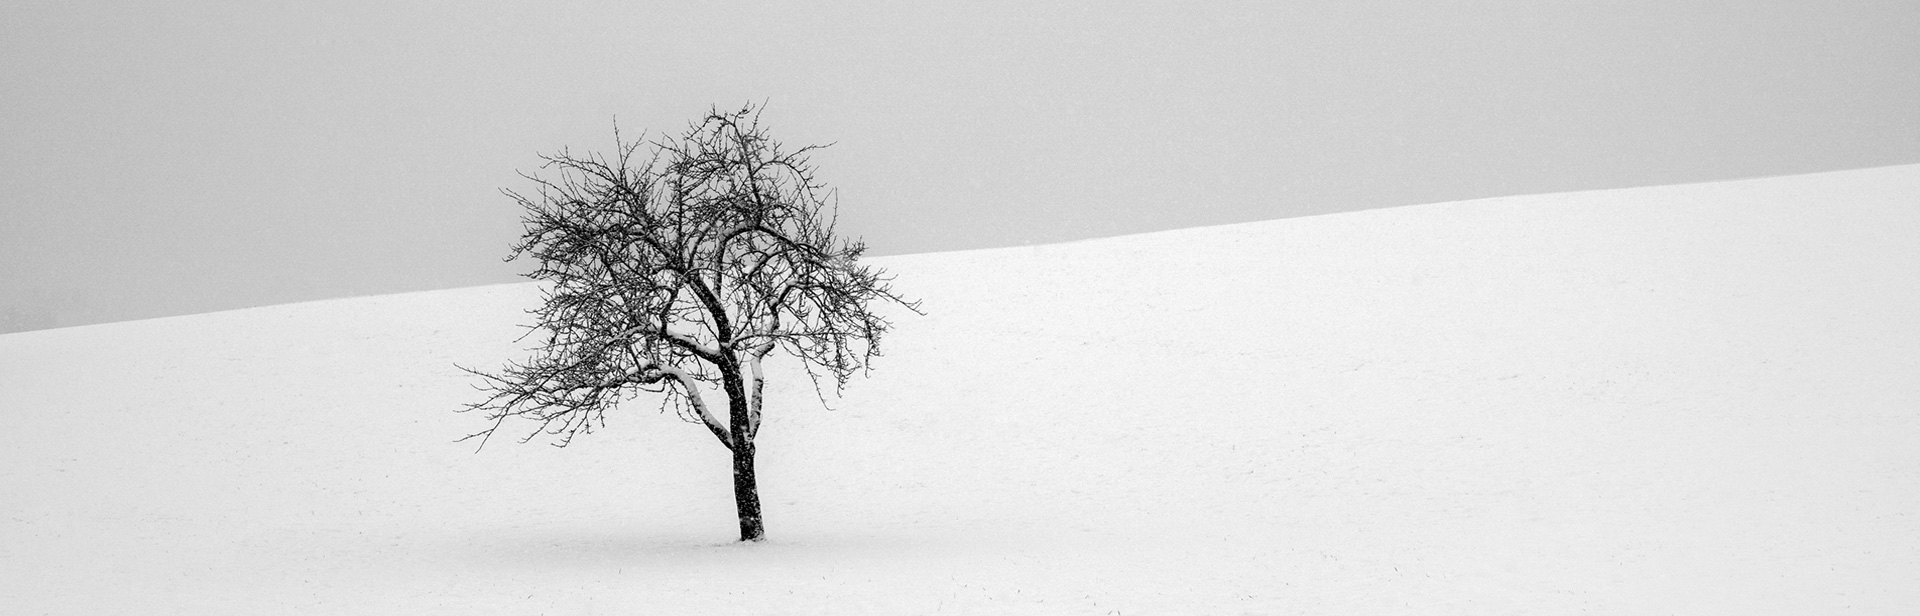 Zen trees packed in snow